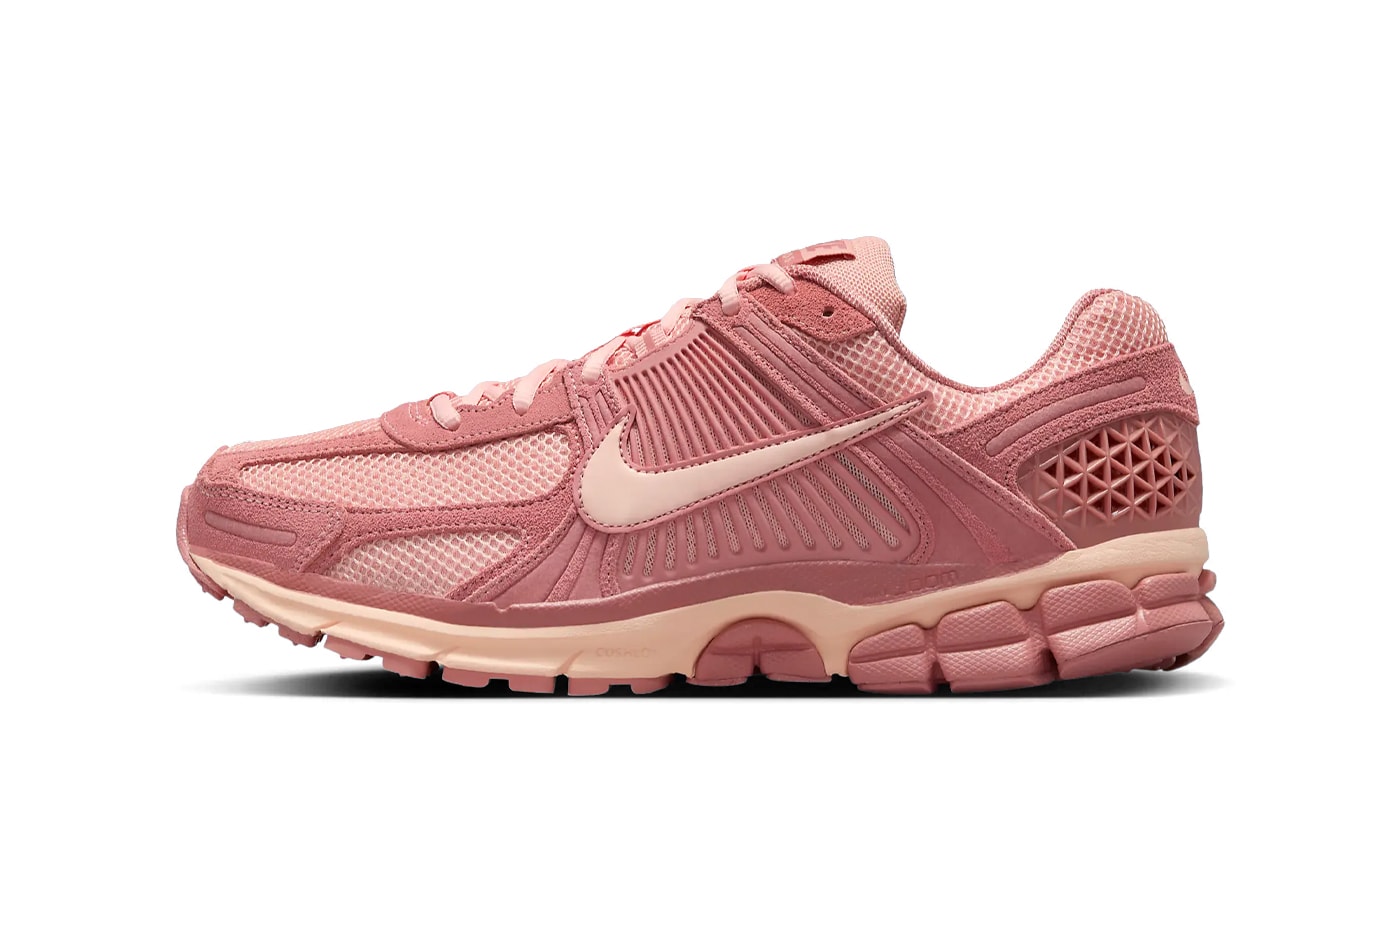 Nike Zoom Vomero 5 Surfaces в цвете "Red Stardust" HF1553-600 удобные повседневные кроссовки розового цвета однотонные повседневные кроссовки туфли 